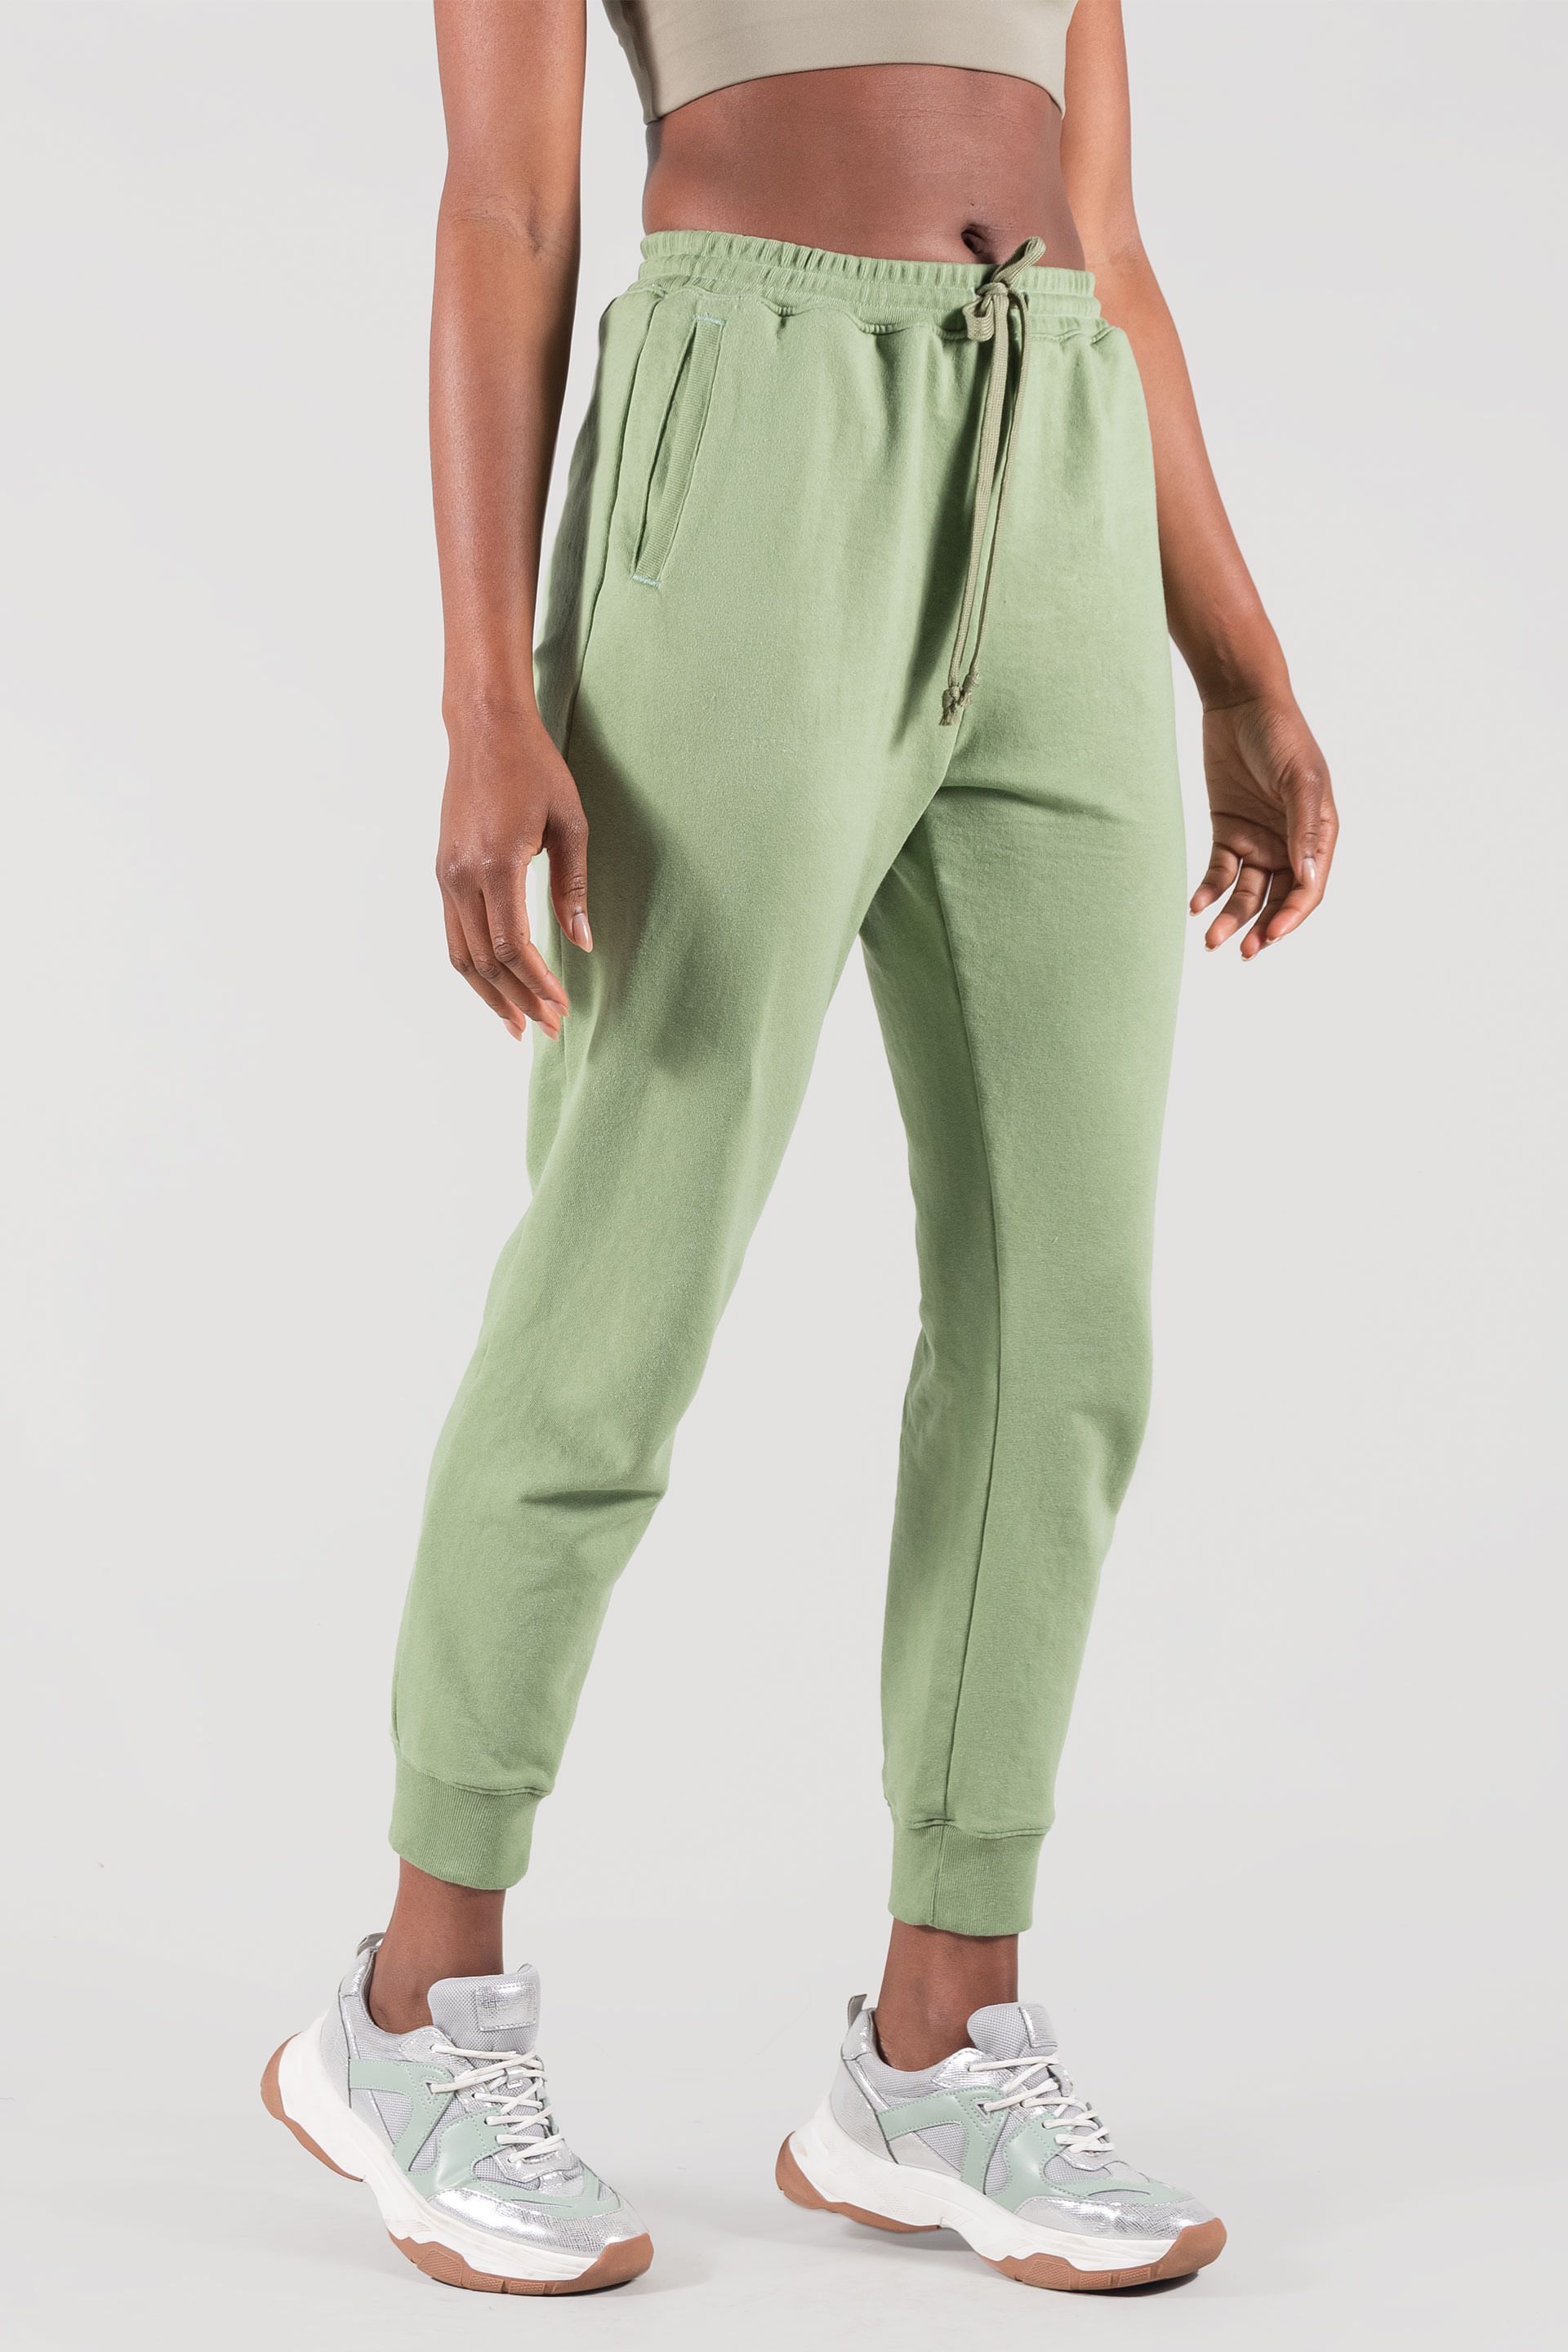 Pants - Moda Oggi para Mujer Felpa Verde Claro Slim